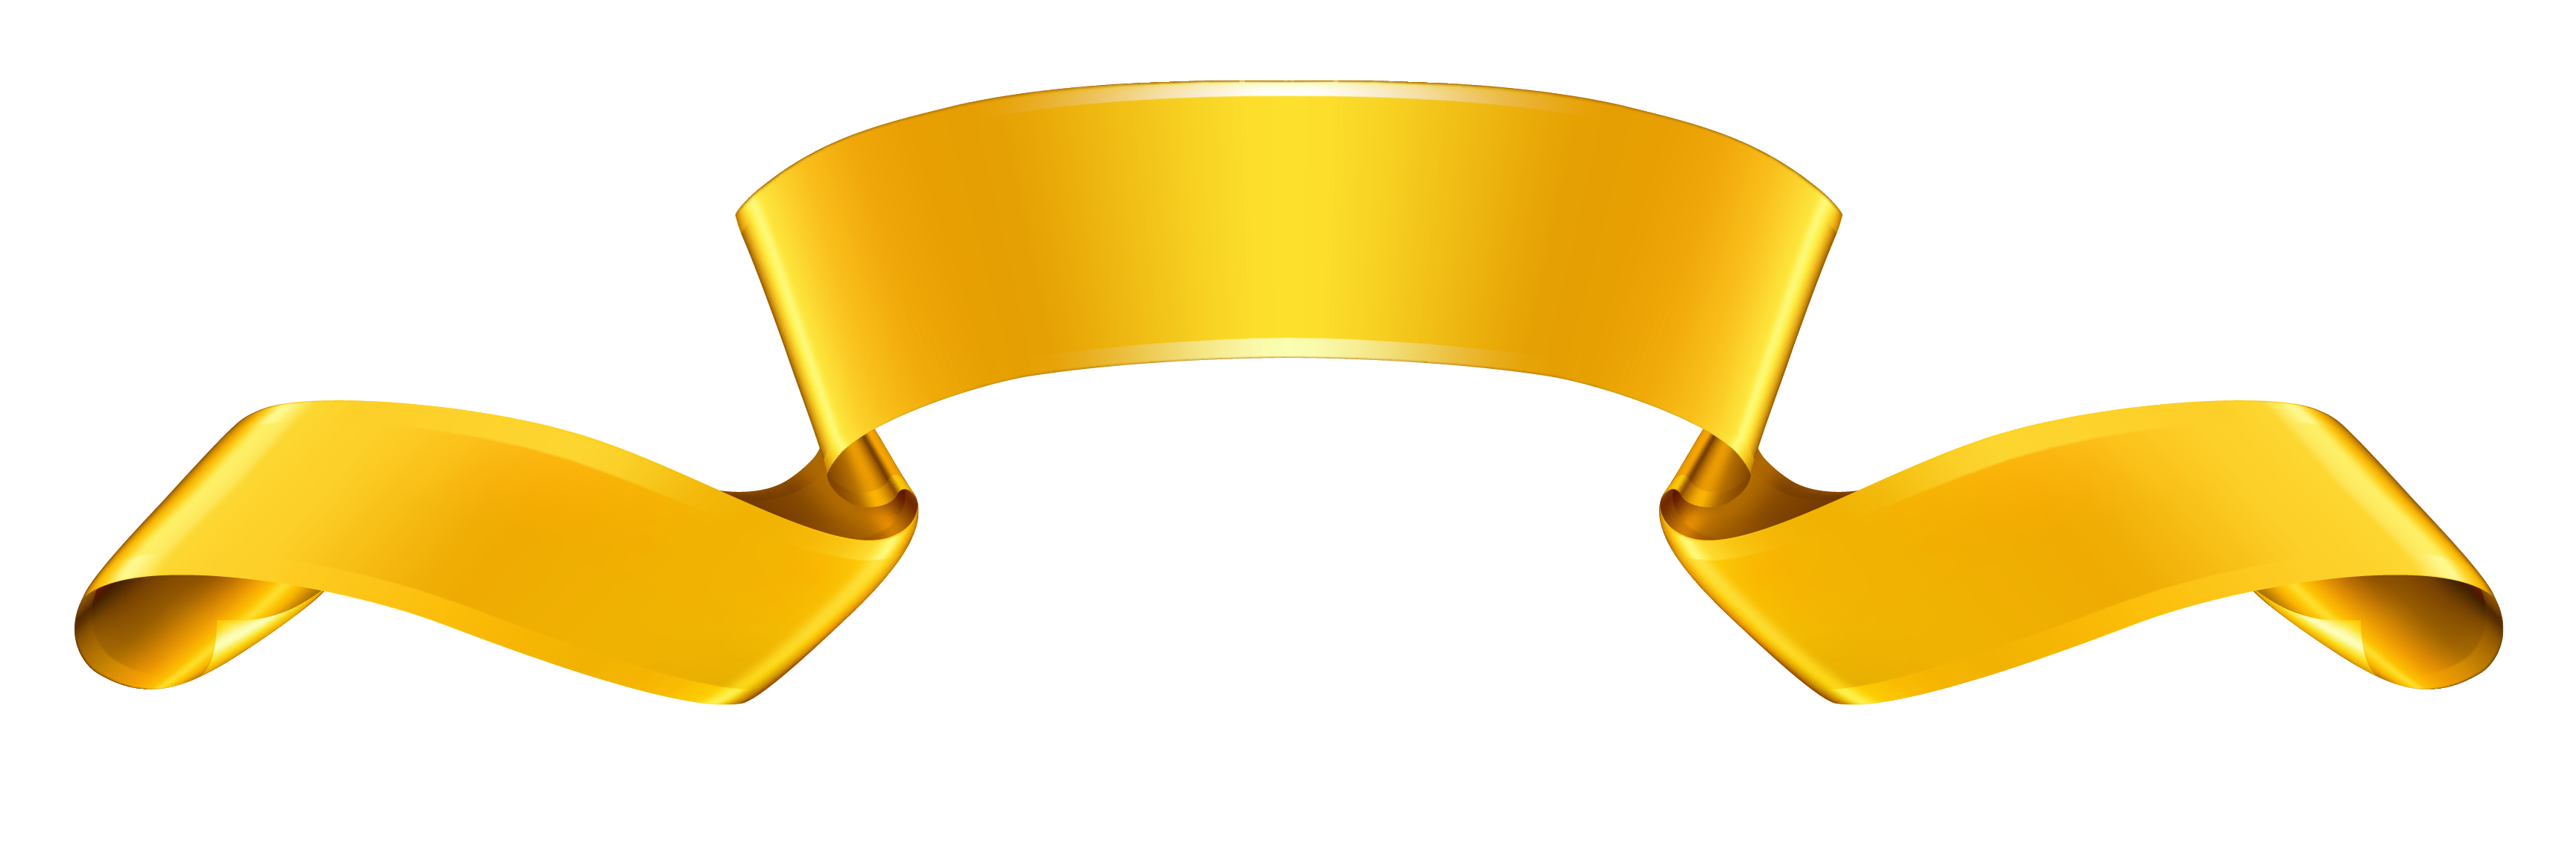 Golden bannière PNG image